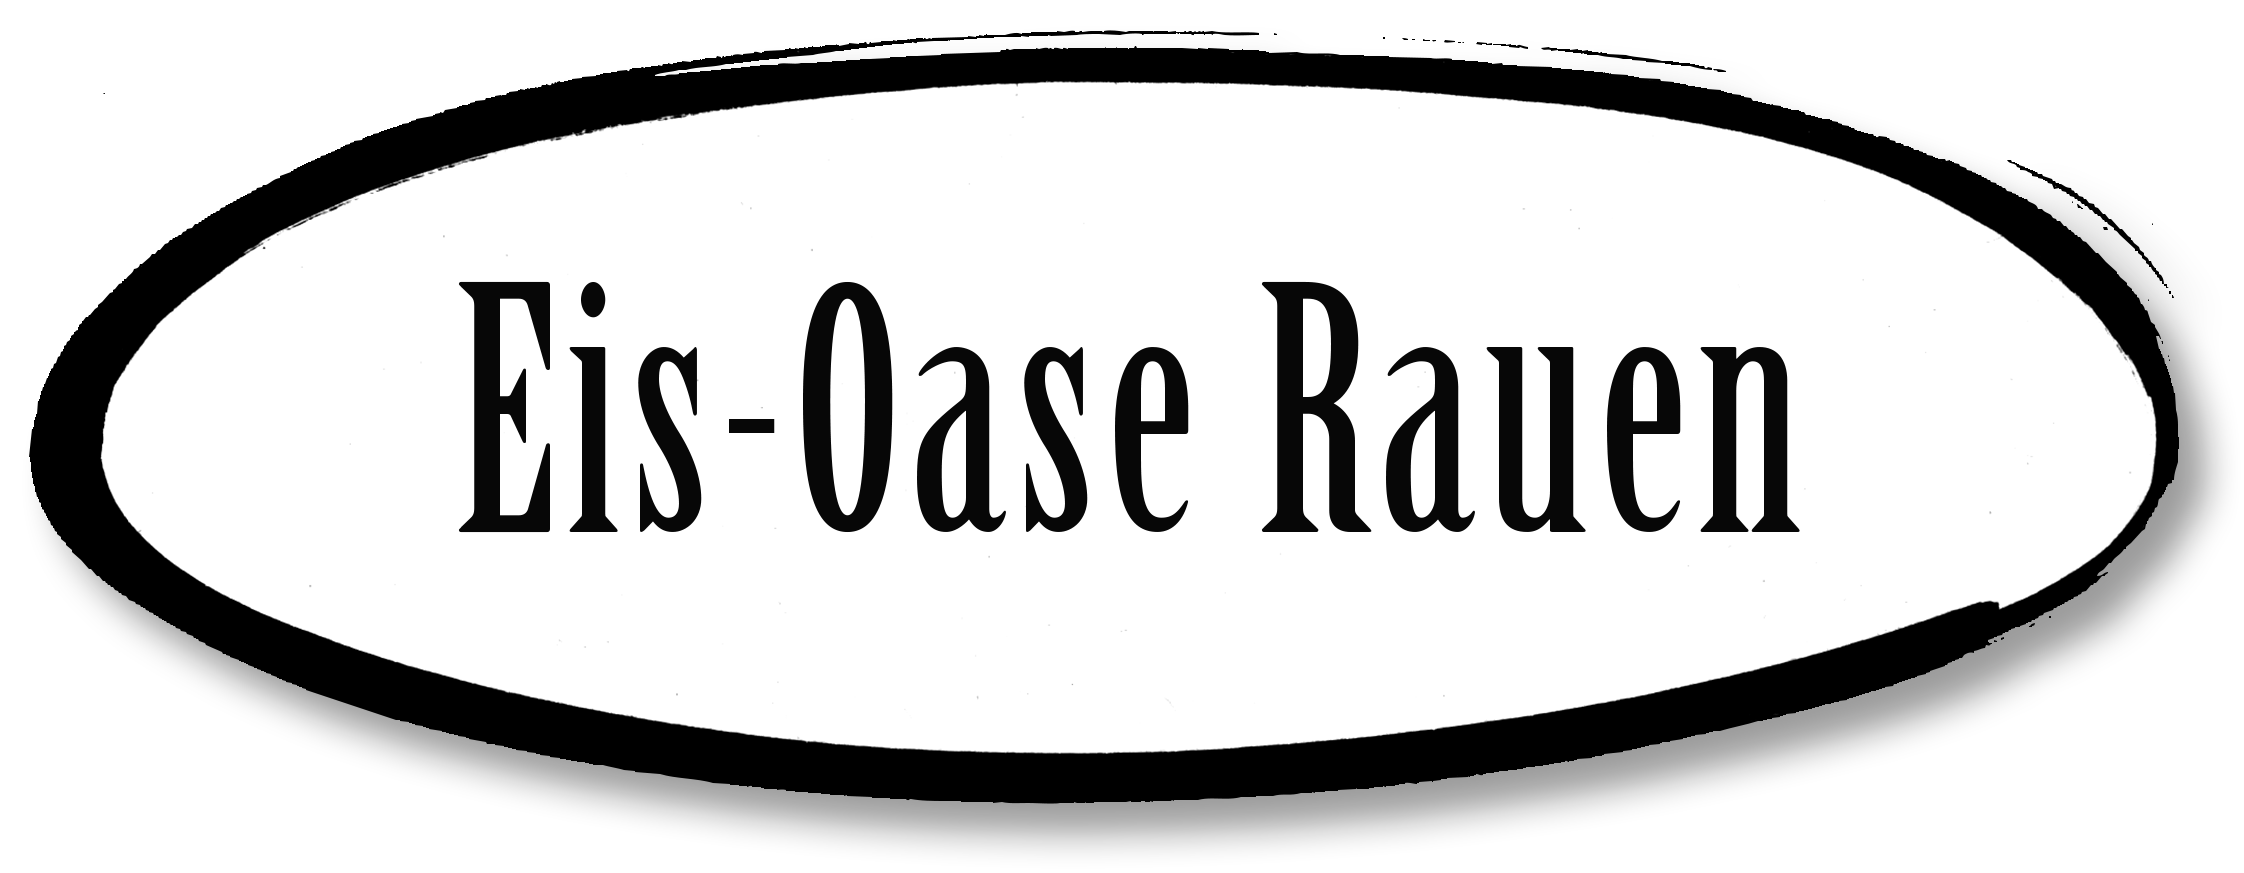 Eis-oase Rauen